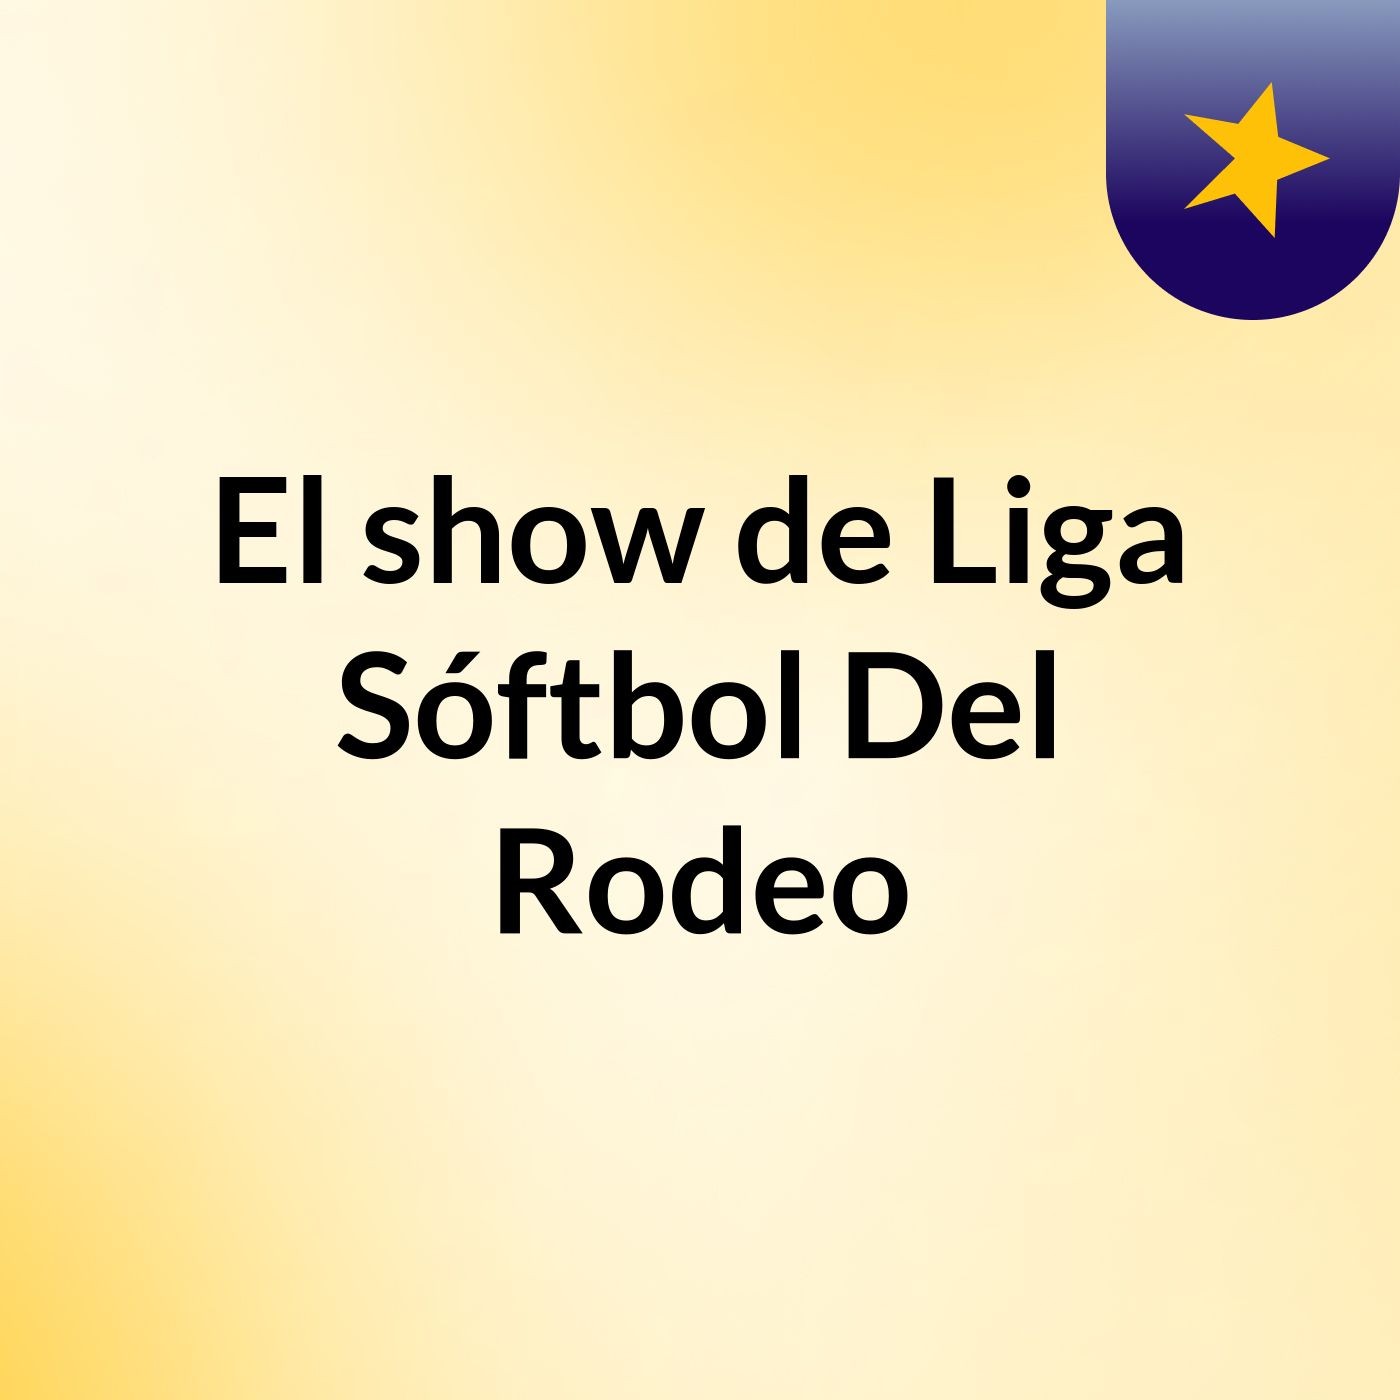 Episodio 5 - El show de Liga Sóftbol Del Rodeo